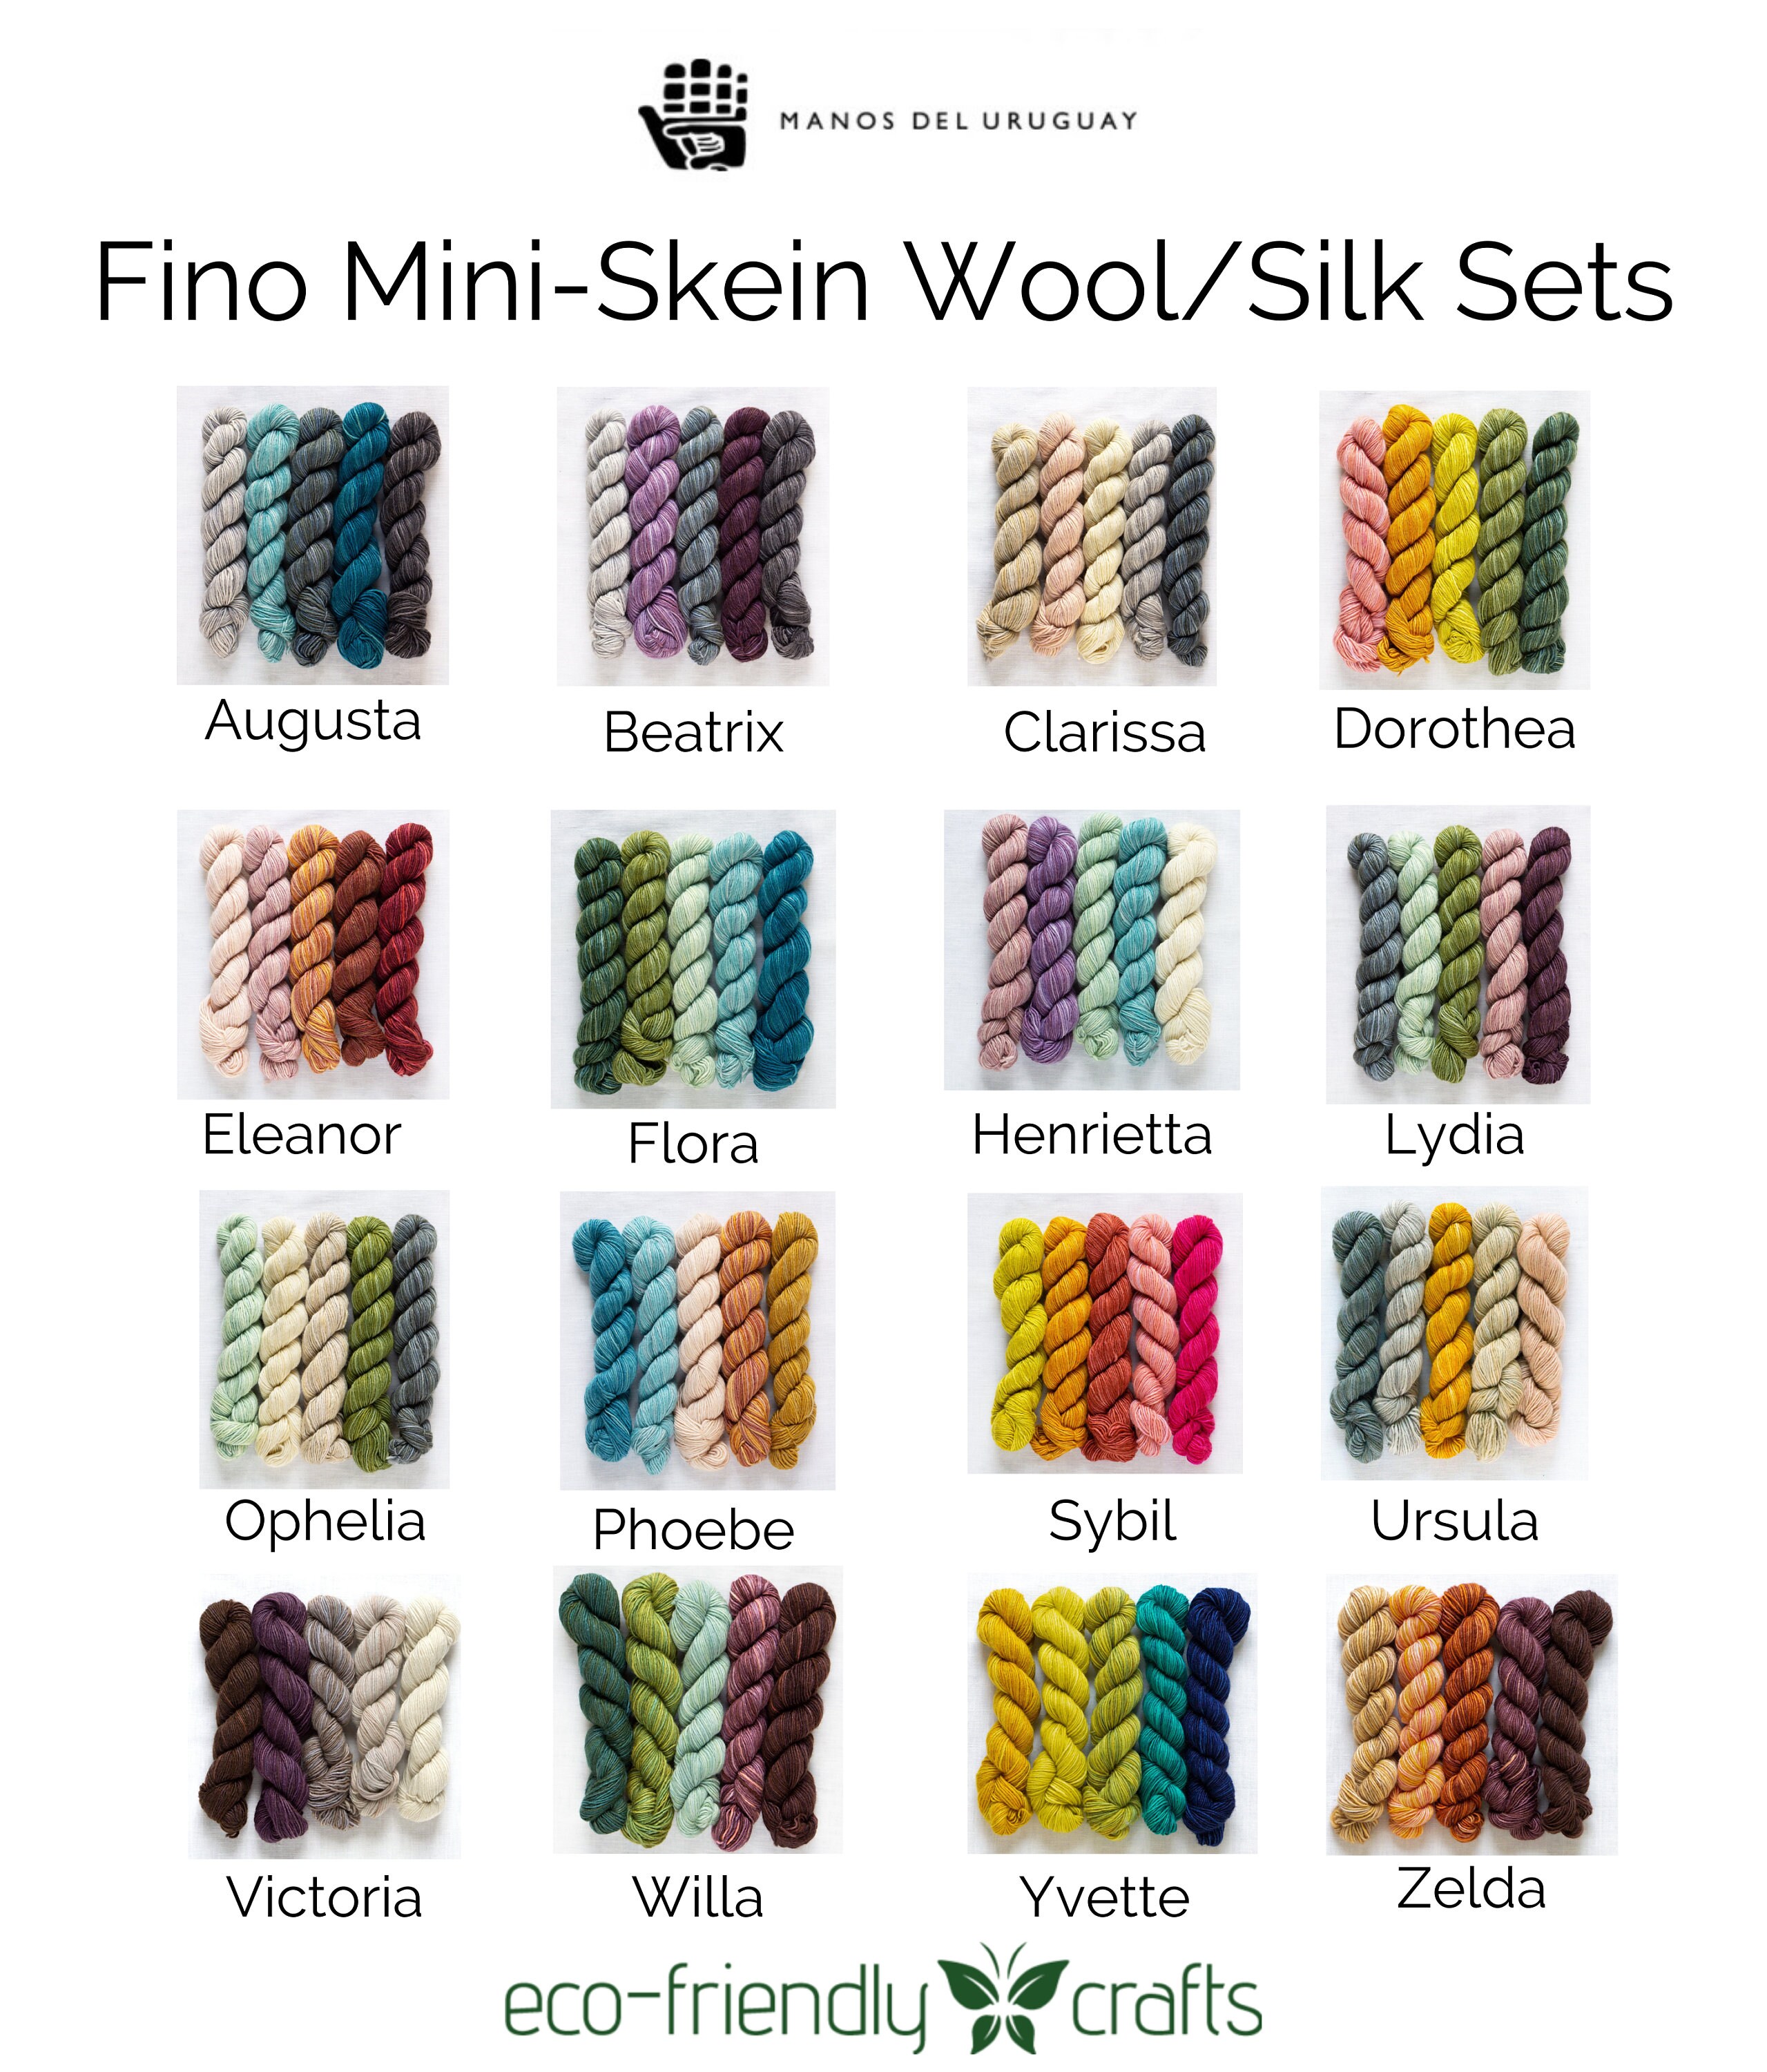 Fino Mini Skein Kits, Manos Del Uruguay